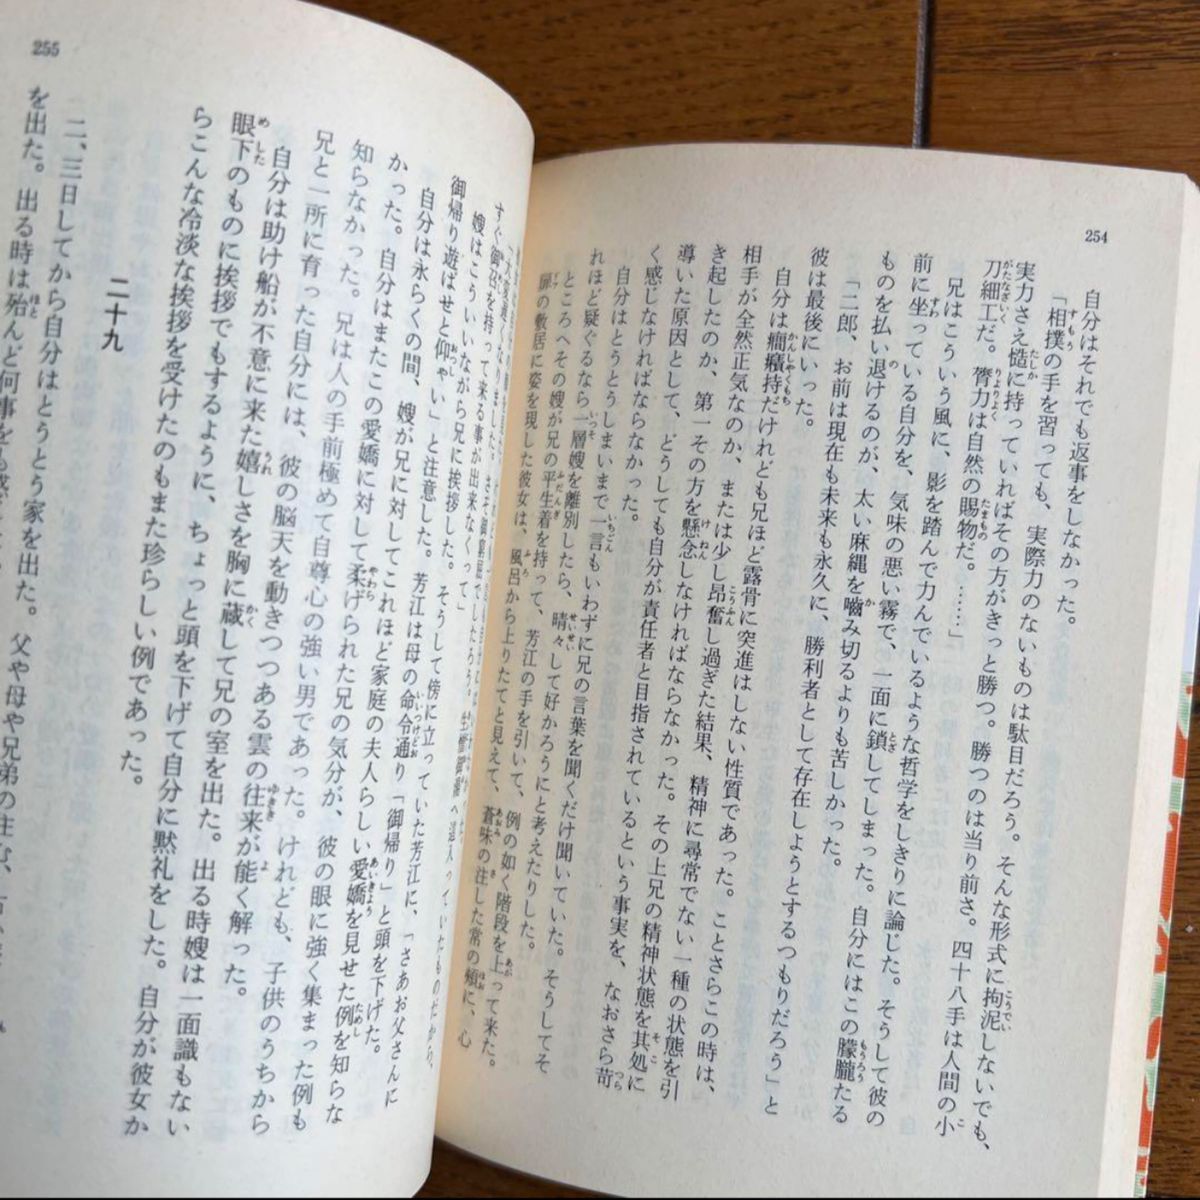 「こころ」「明暗」他 夏目漱石 岩波文庫 10冊セット